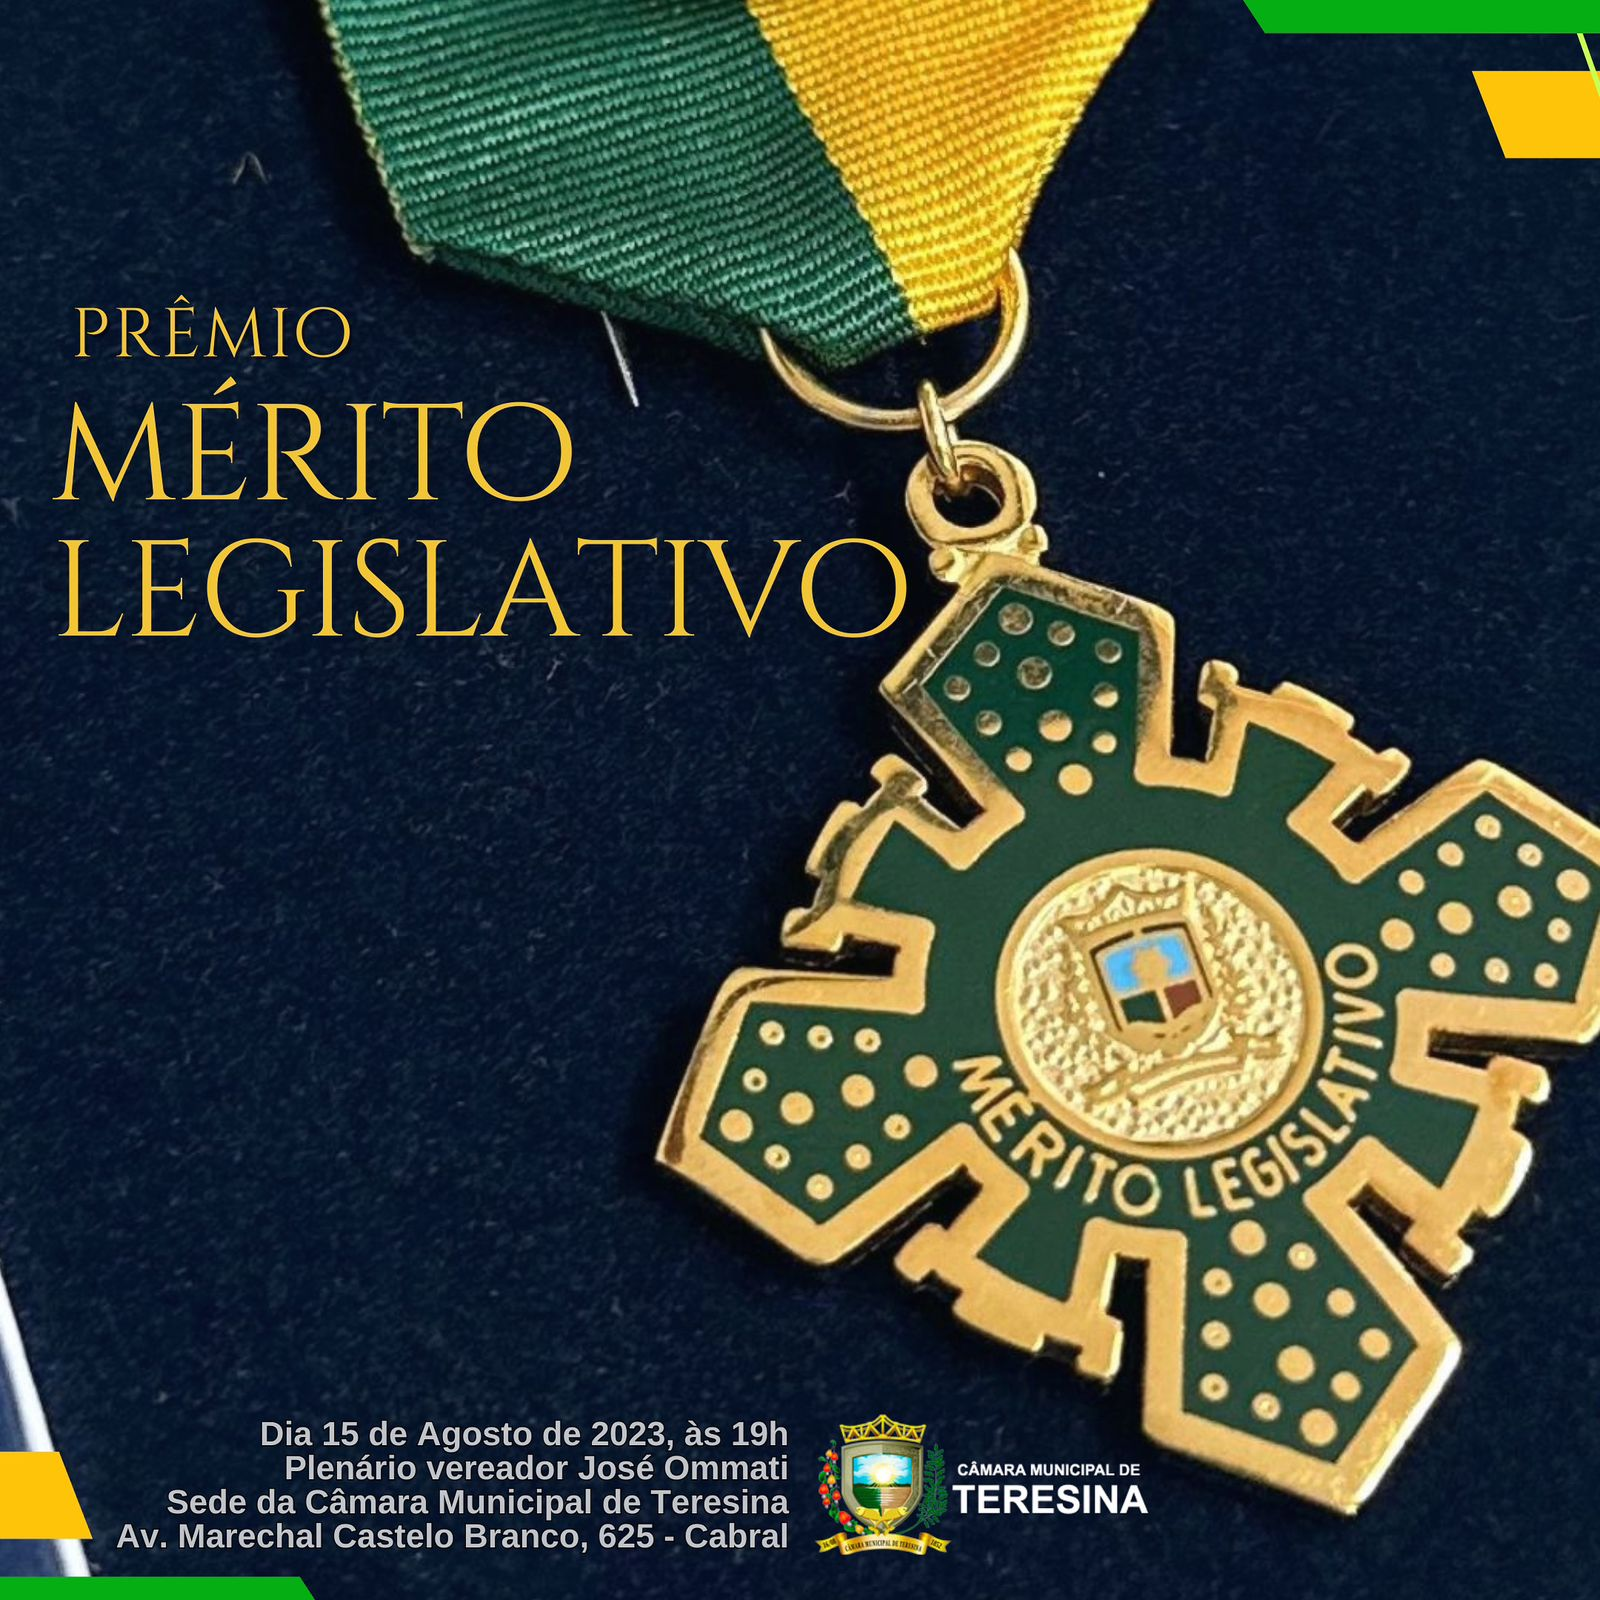 Legislativo confere Diploma de Honra ao Mérito a farmacêutico do município  — Câmara Municipal